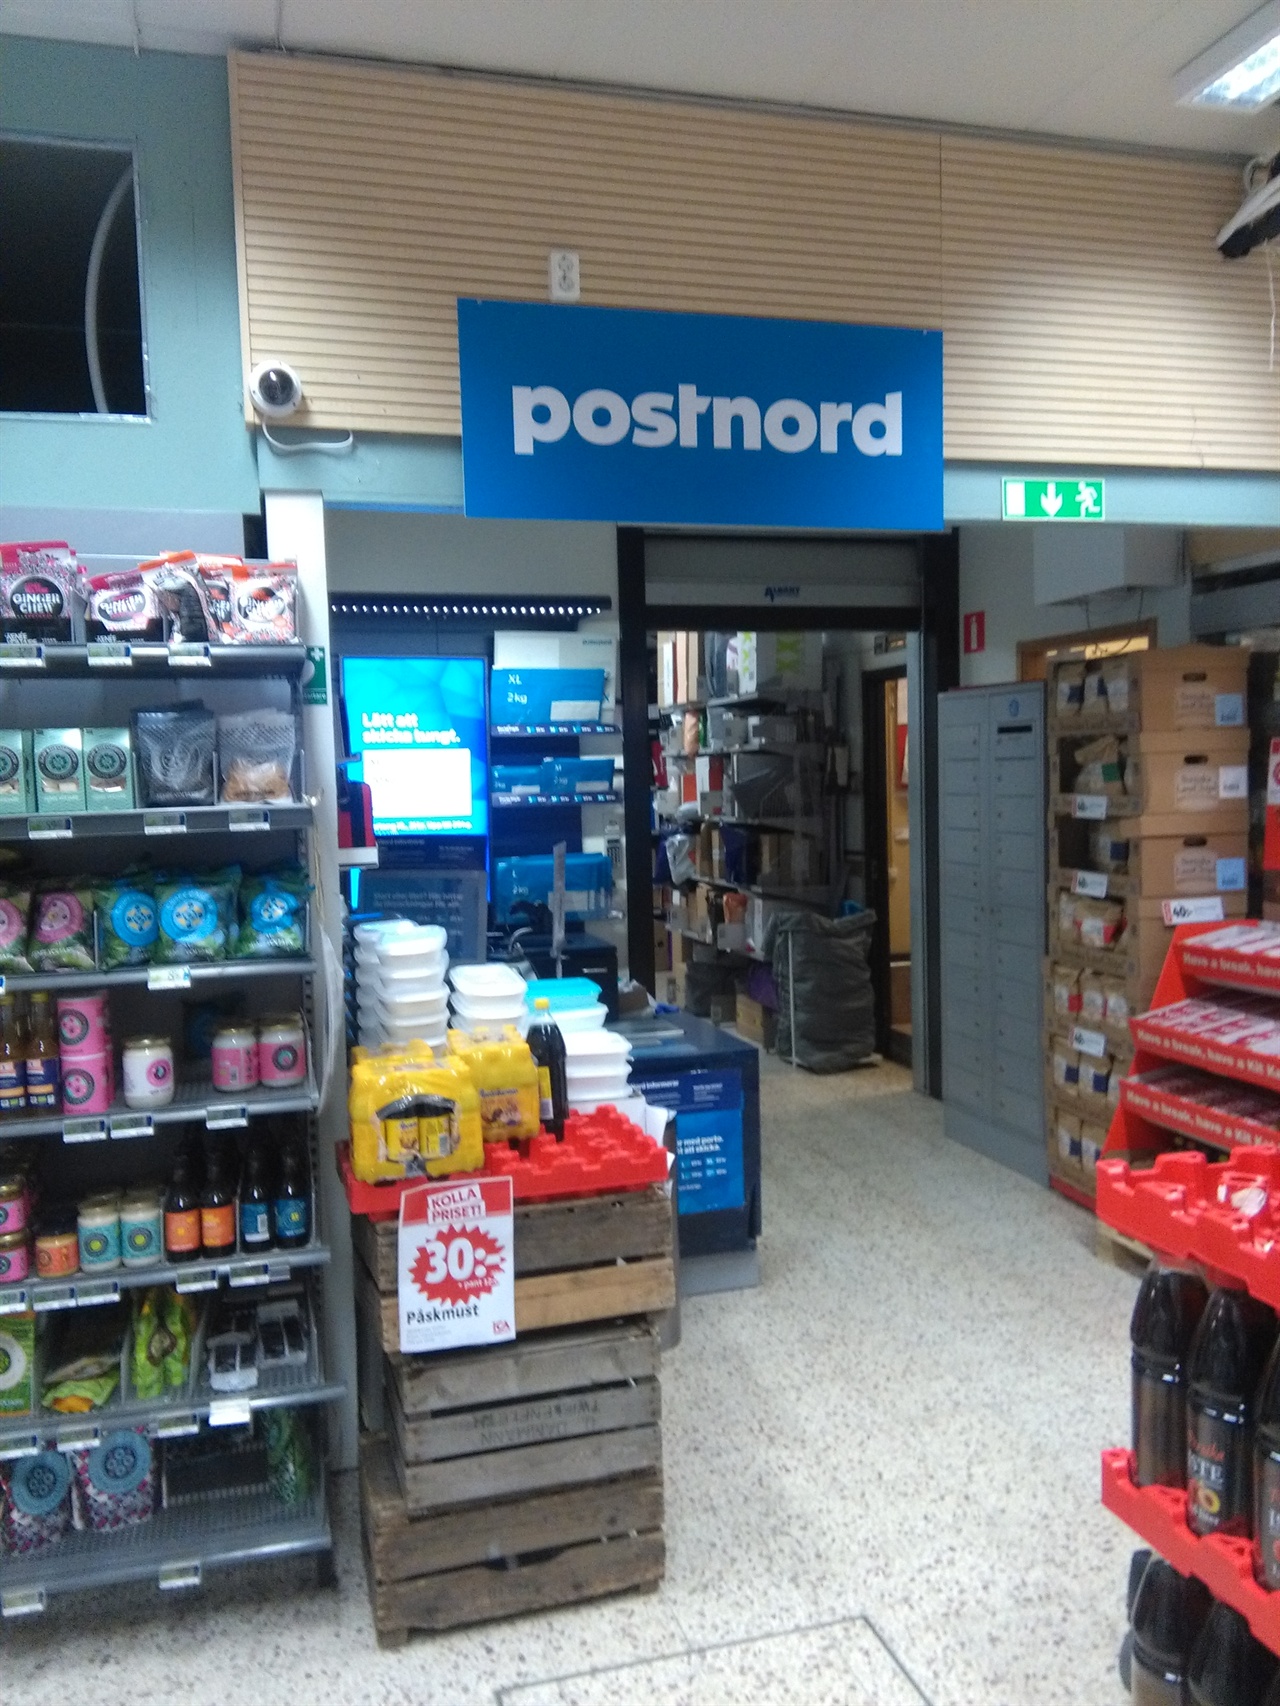 수퍼마켓 안으로 들어오면 Postnord 로고가 있는 우편물 취급소가 보입니다. 